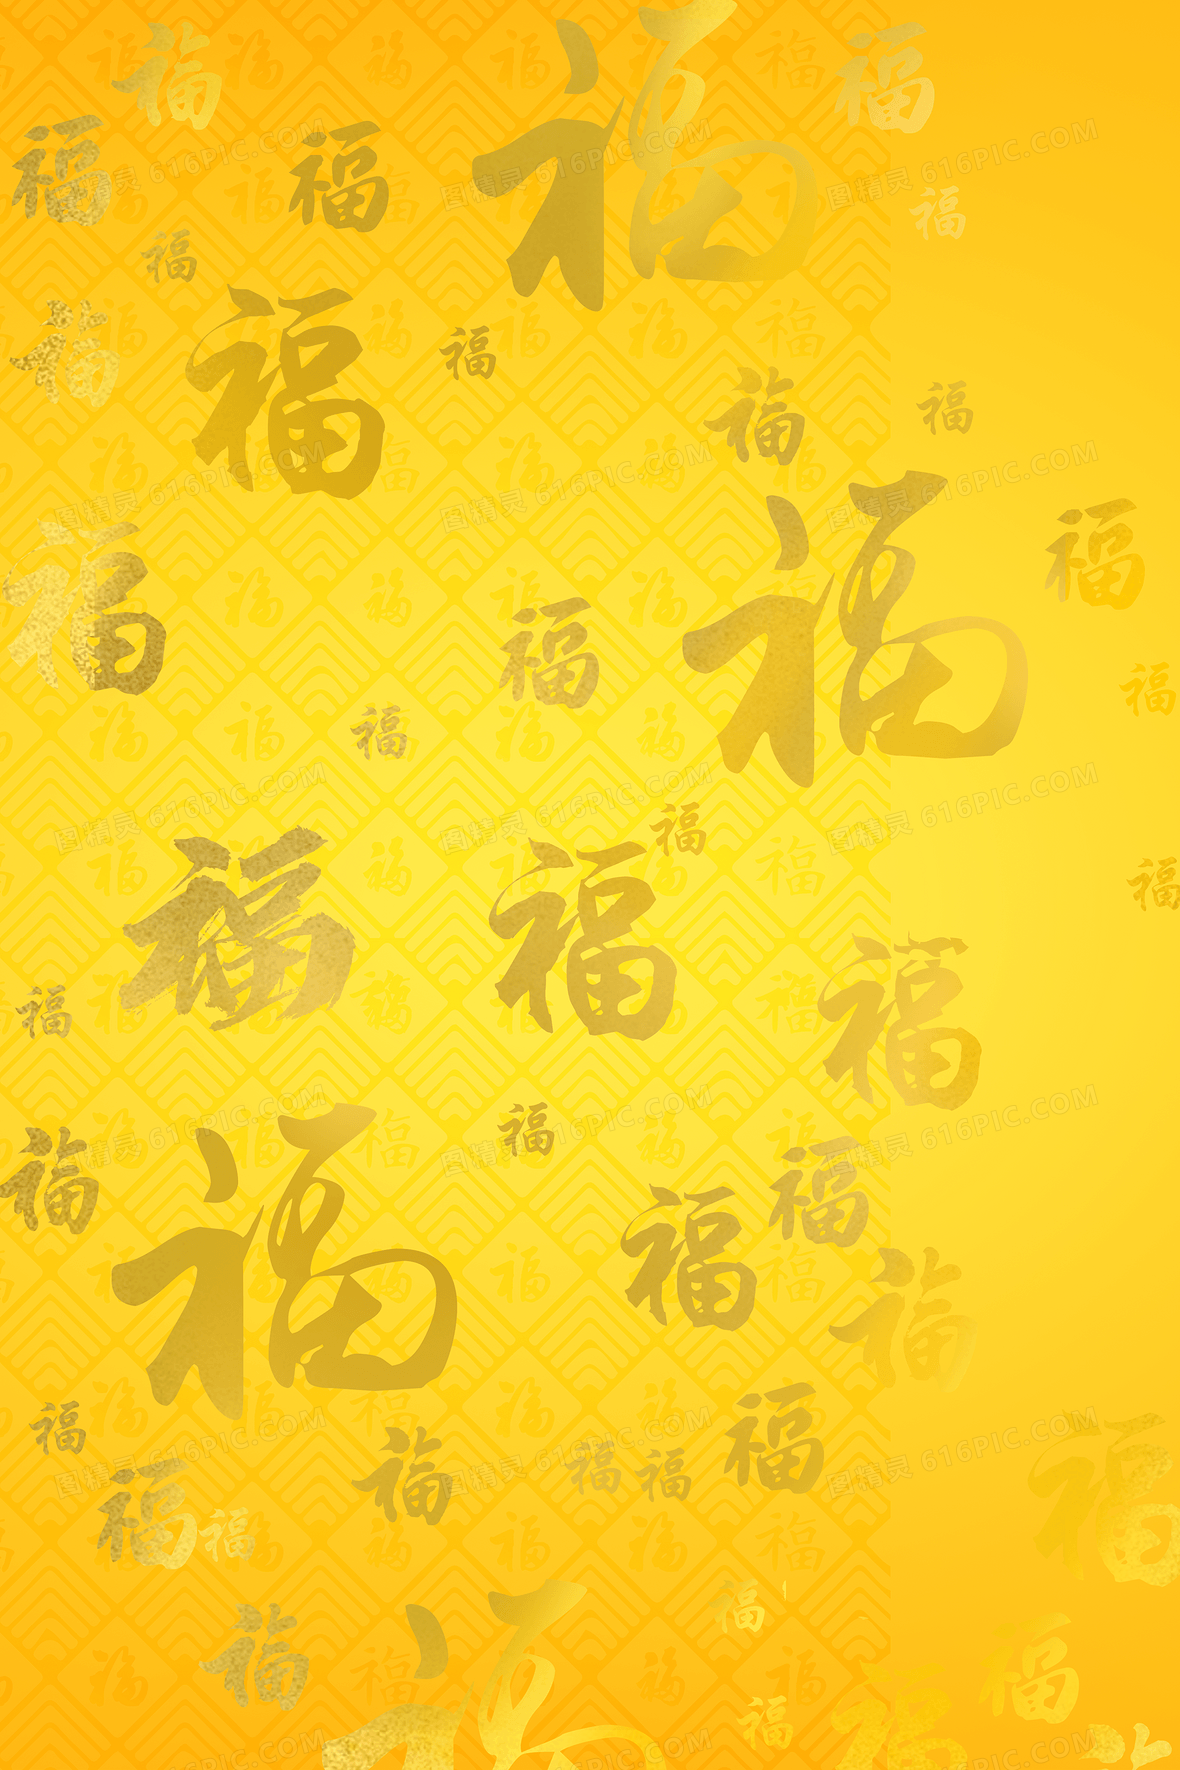 黄色渐变福字底纹背景jpgpsd金色大气福字红包海报背景素材2480